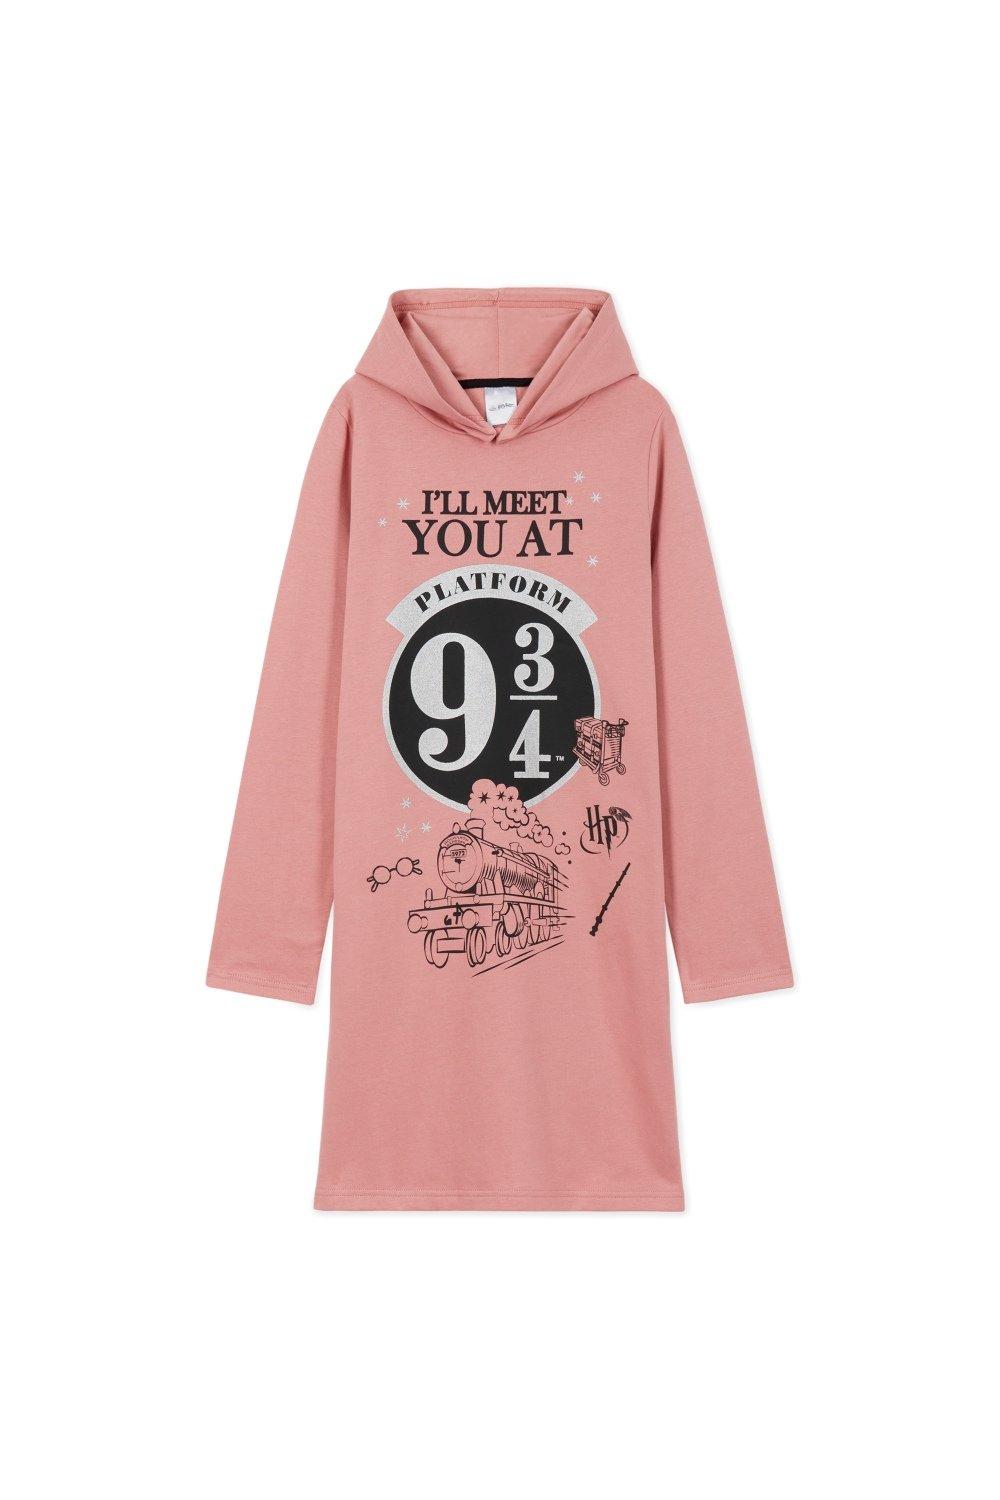 Платье-худи Harry Potter, розовый толстовка с капюшоном из японского аниме токийский гуль худи с принтом канаки мужская уличная одежда для косплея большого размера свит